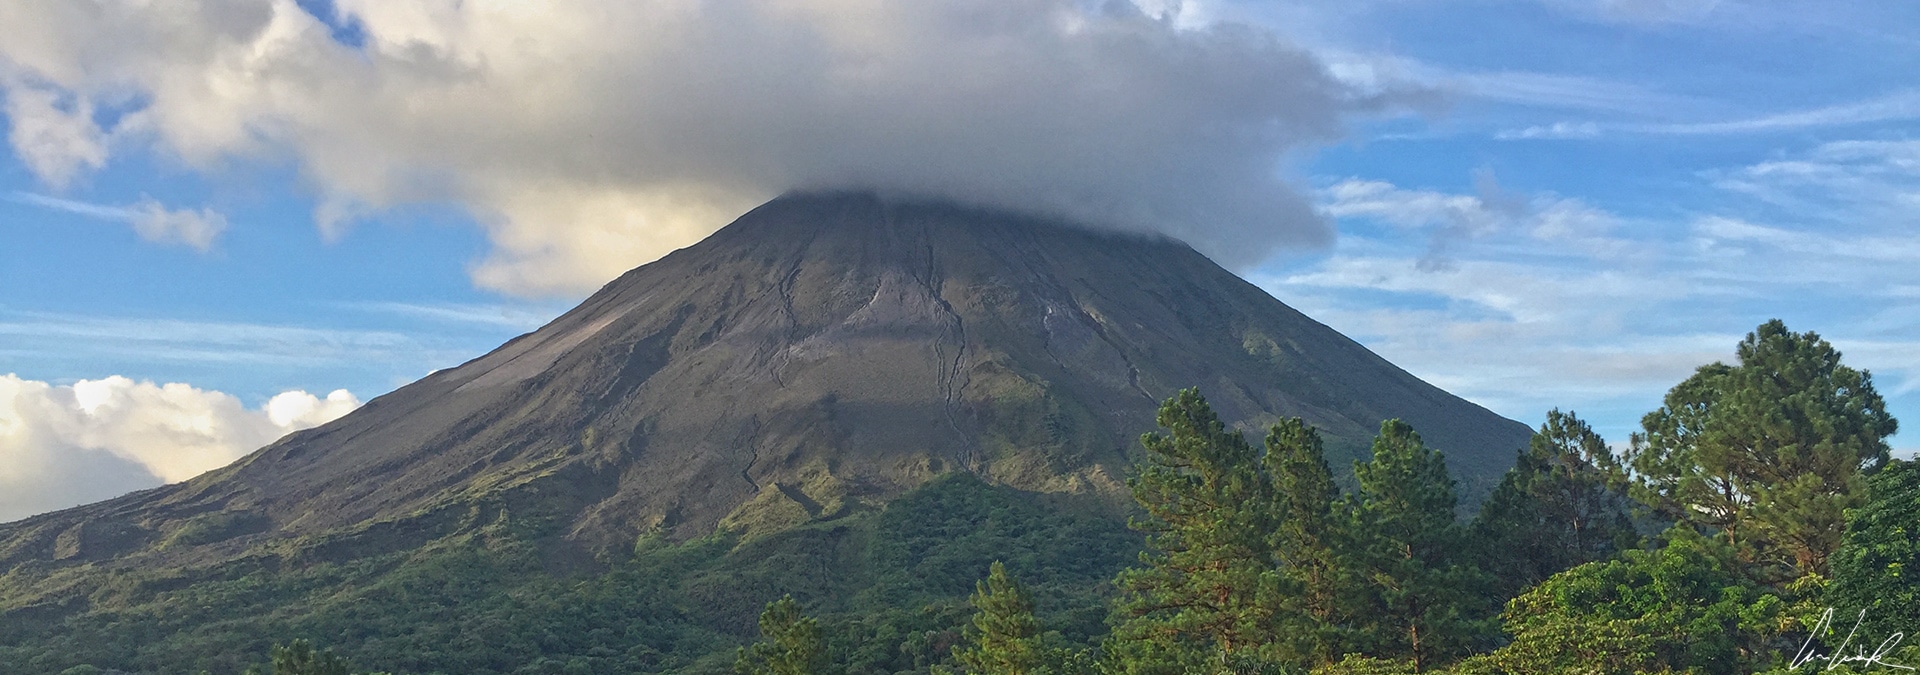 Le parc national du volcan Arenal, une merveille naturelle